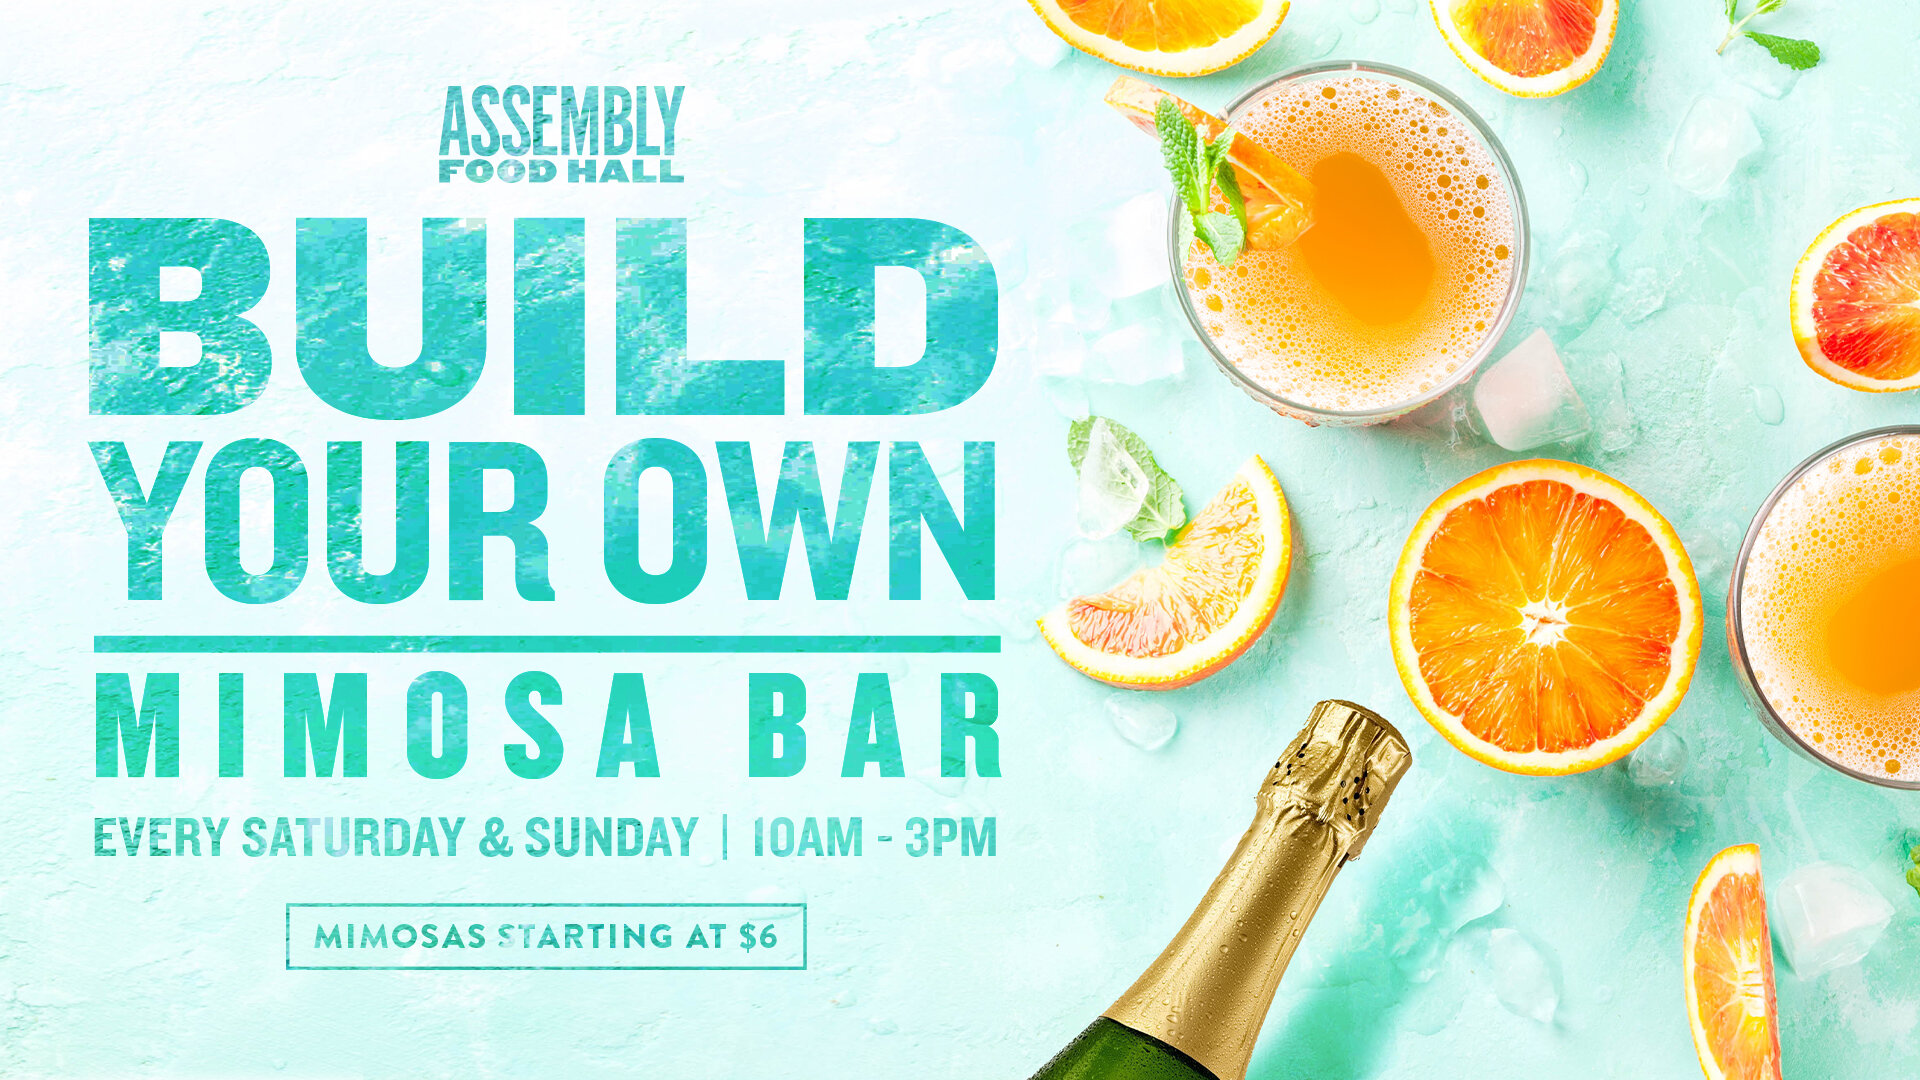 Mimosa Bar at Assembly Hall - hero